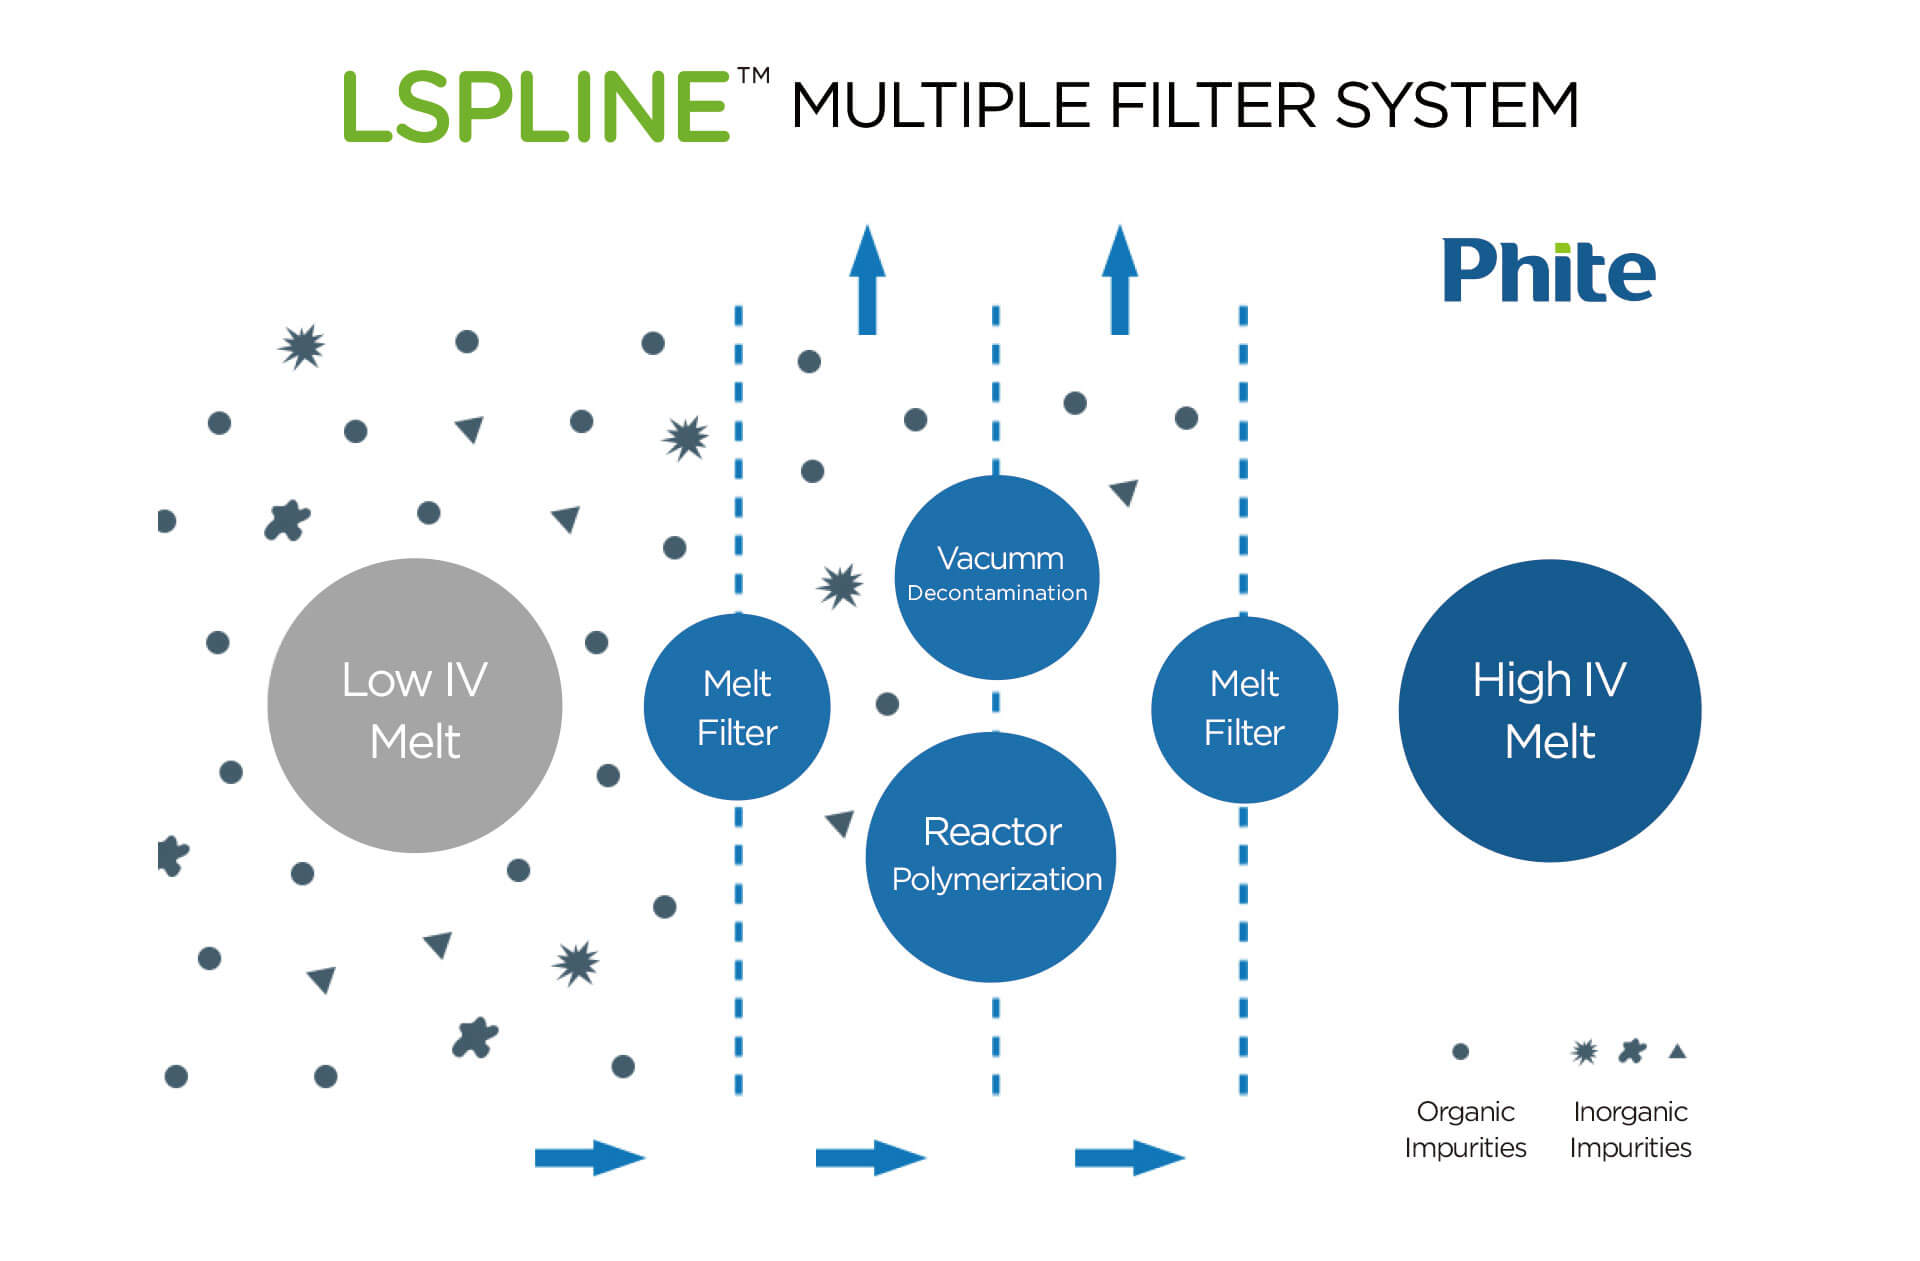 LSPLINE multiple filter